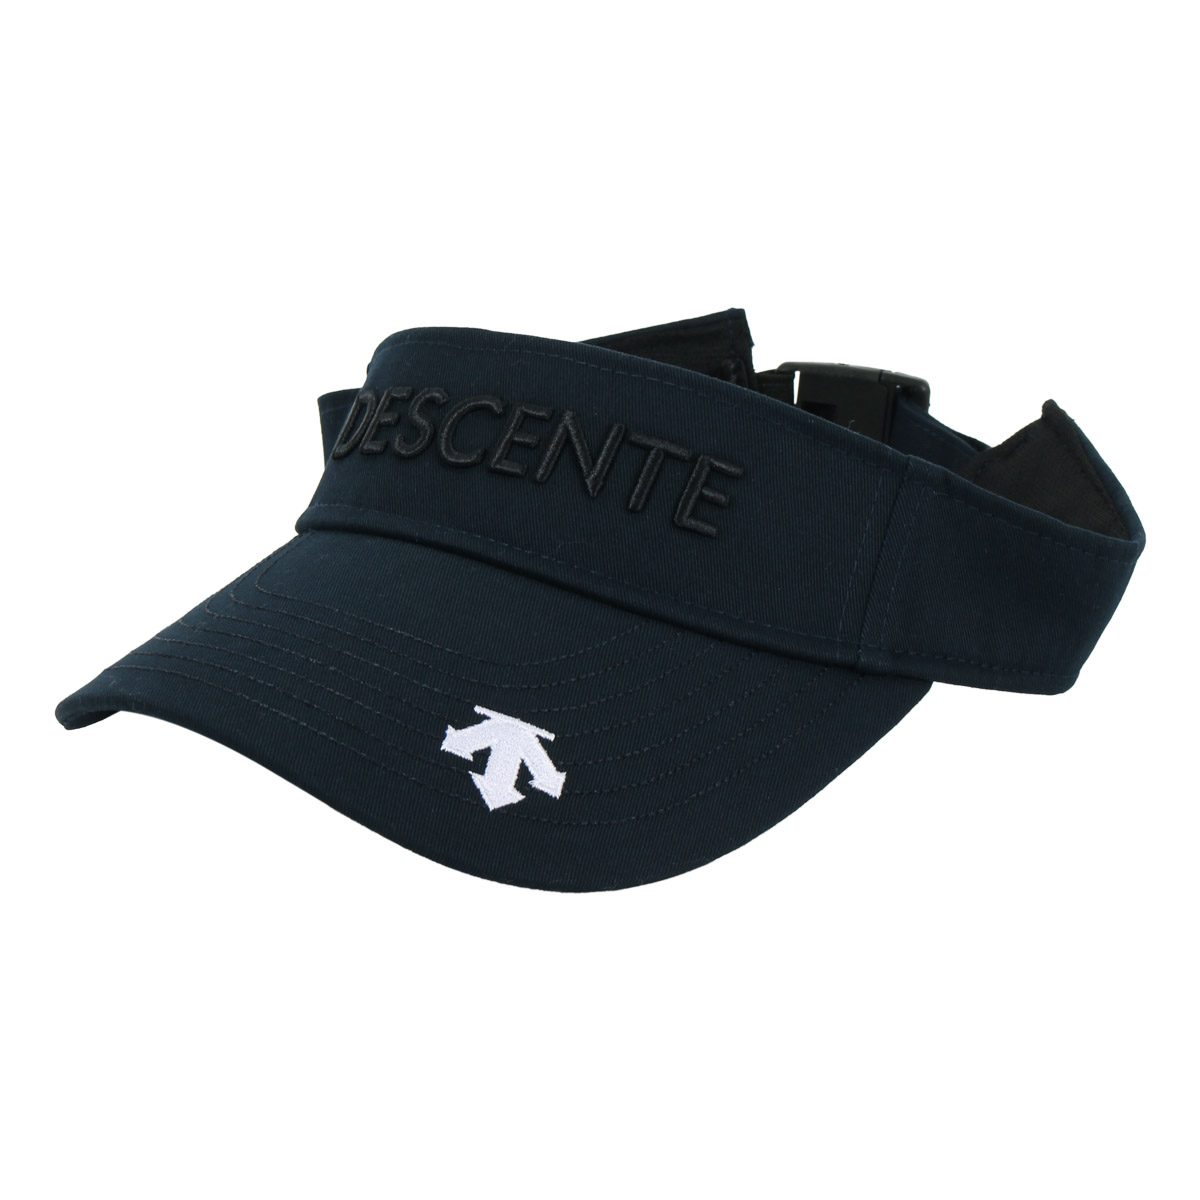 デサント ゴルフ サンバイザー 帽子 メンズ DGBXJC52 DESCENTE 抗菌防臭 吸汗速乾...